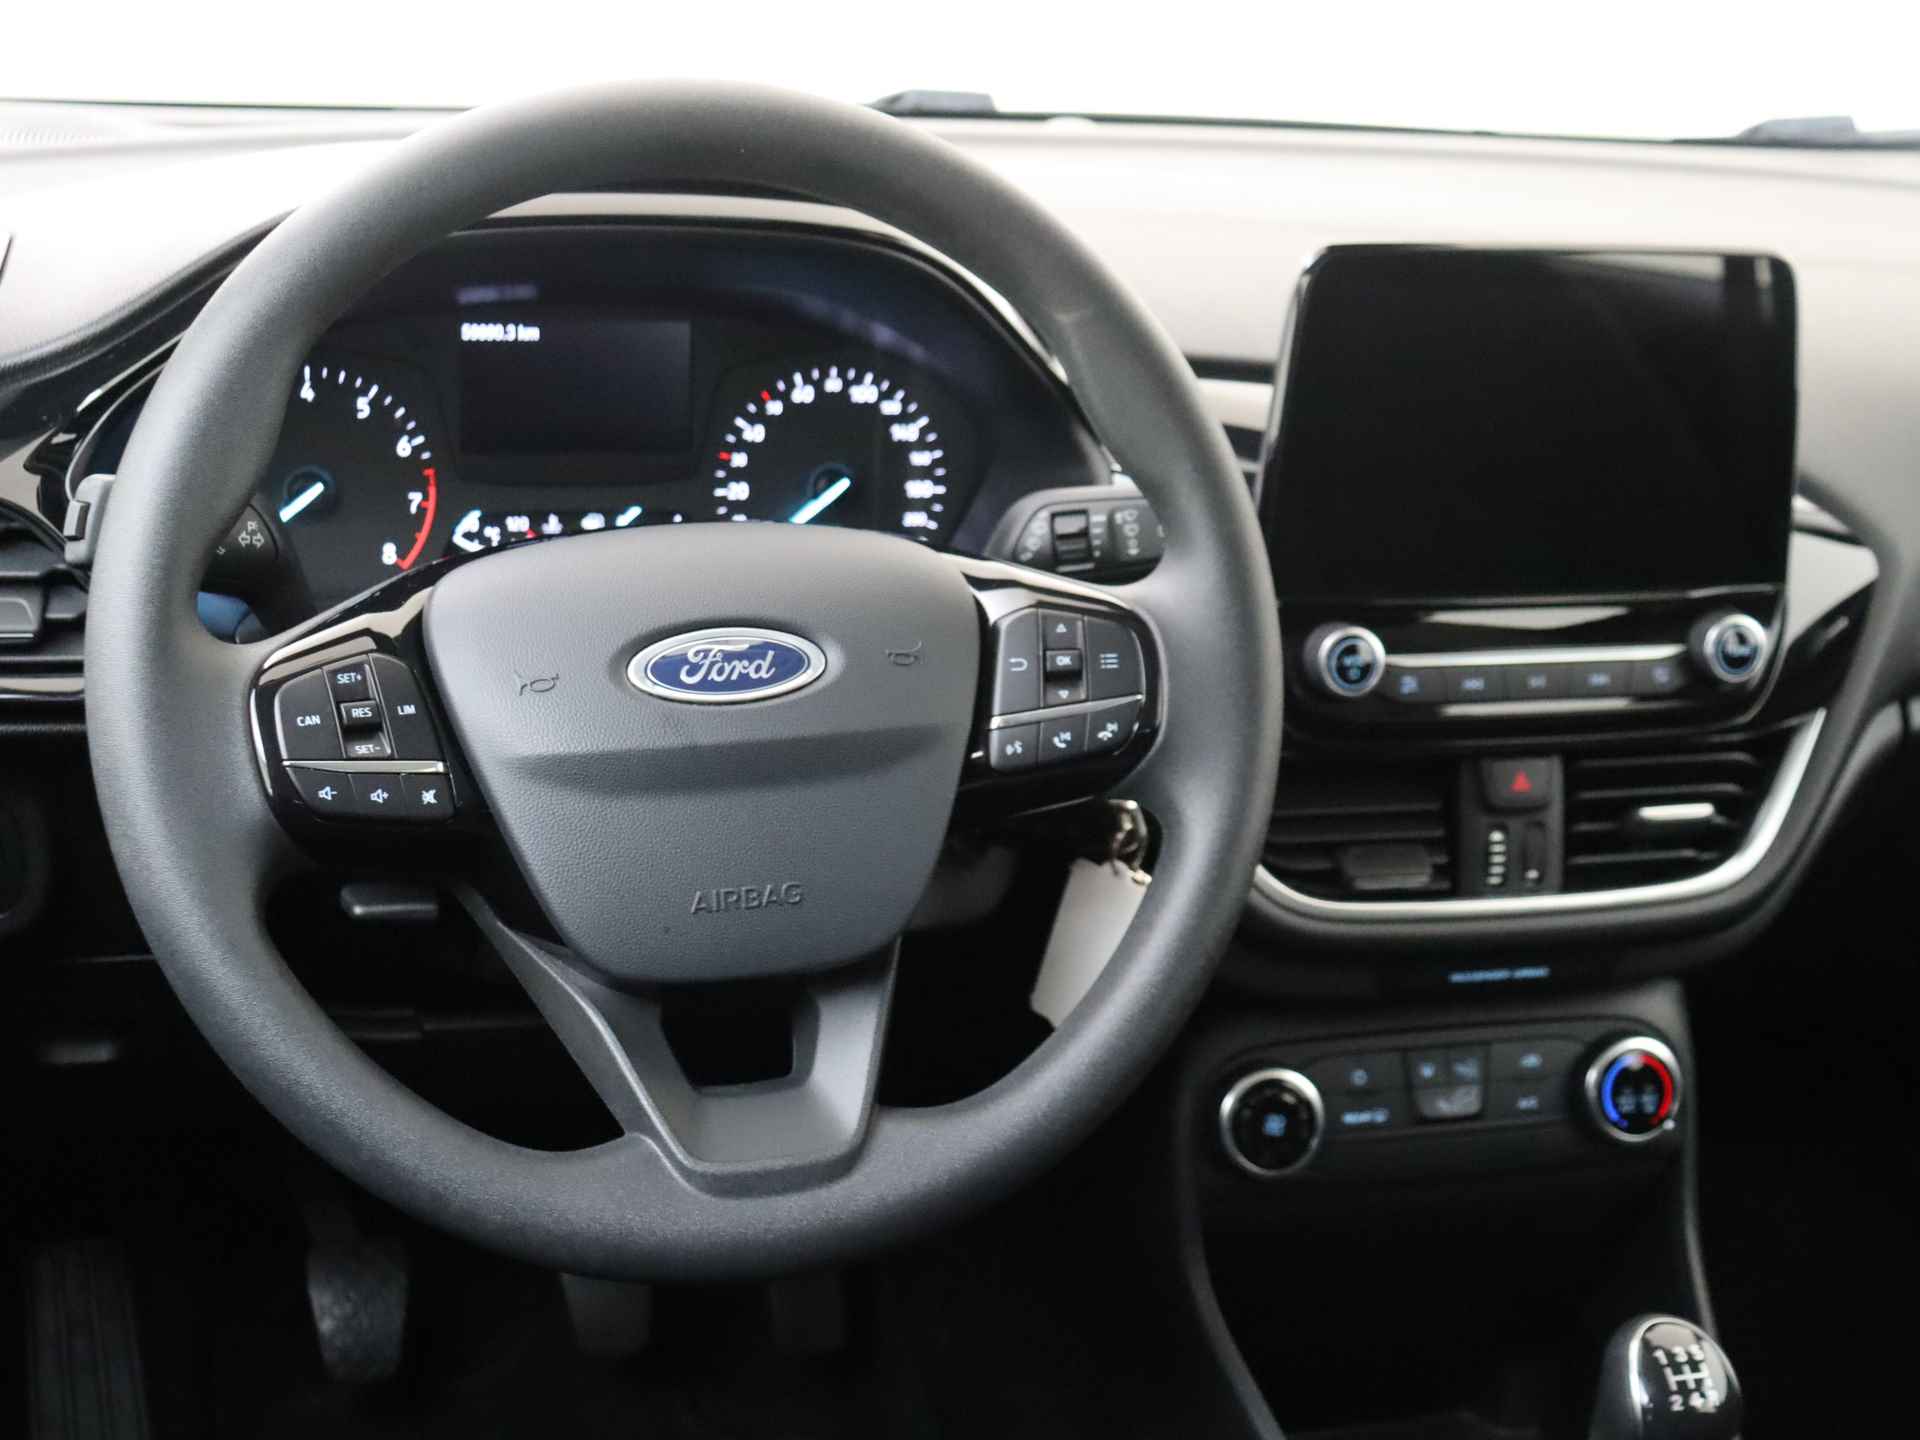 Ford Fiesta 1.1 Trend 5 deurs | Airco - 7/30